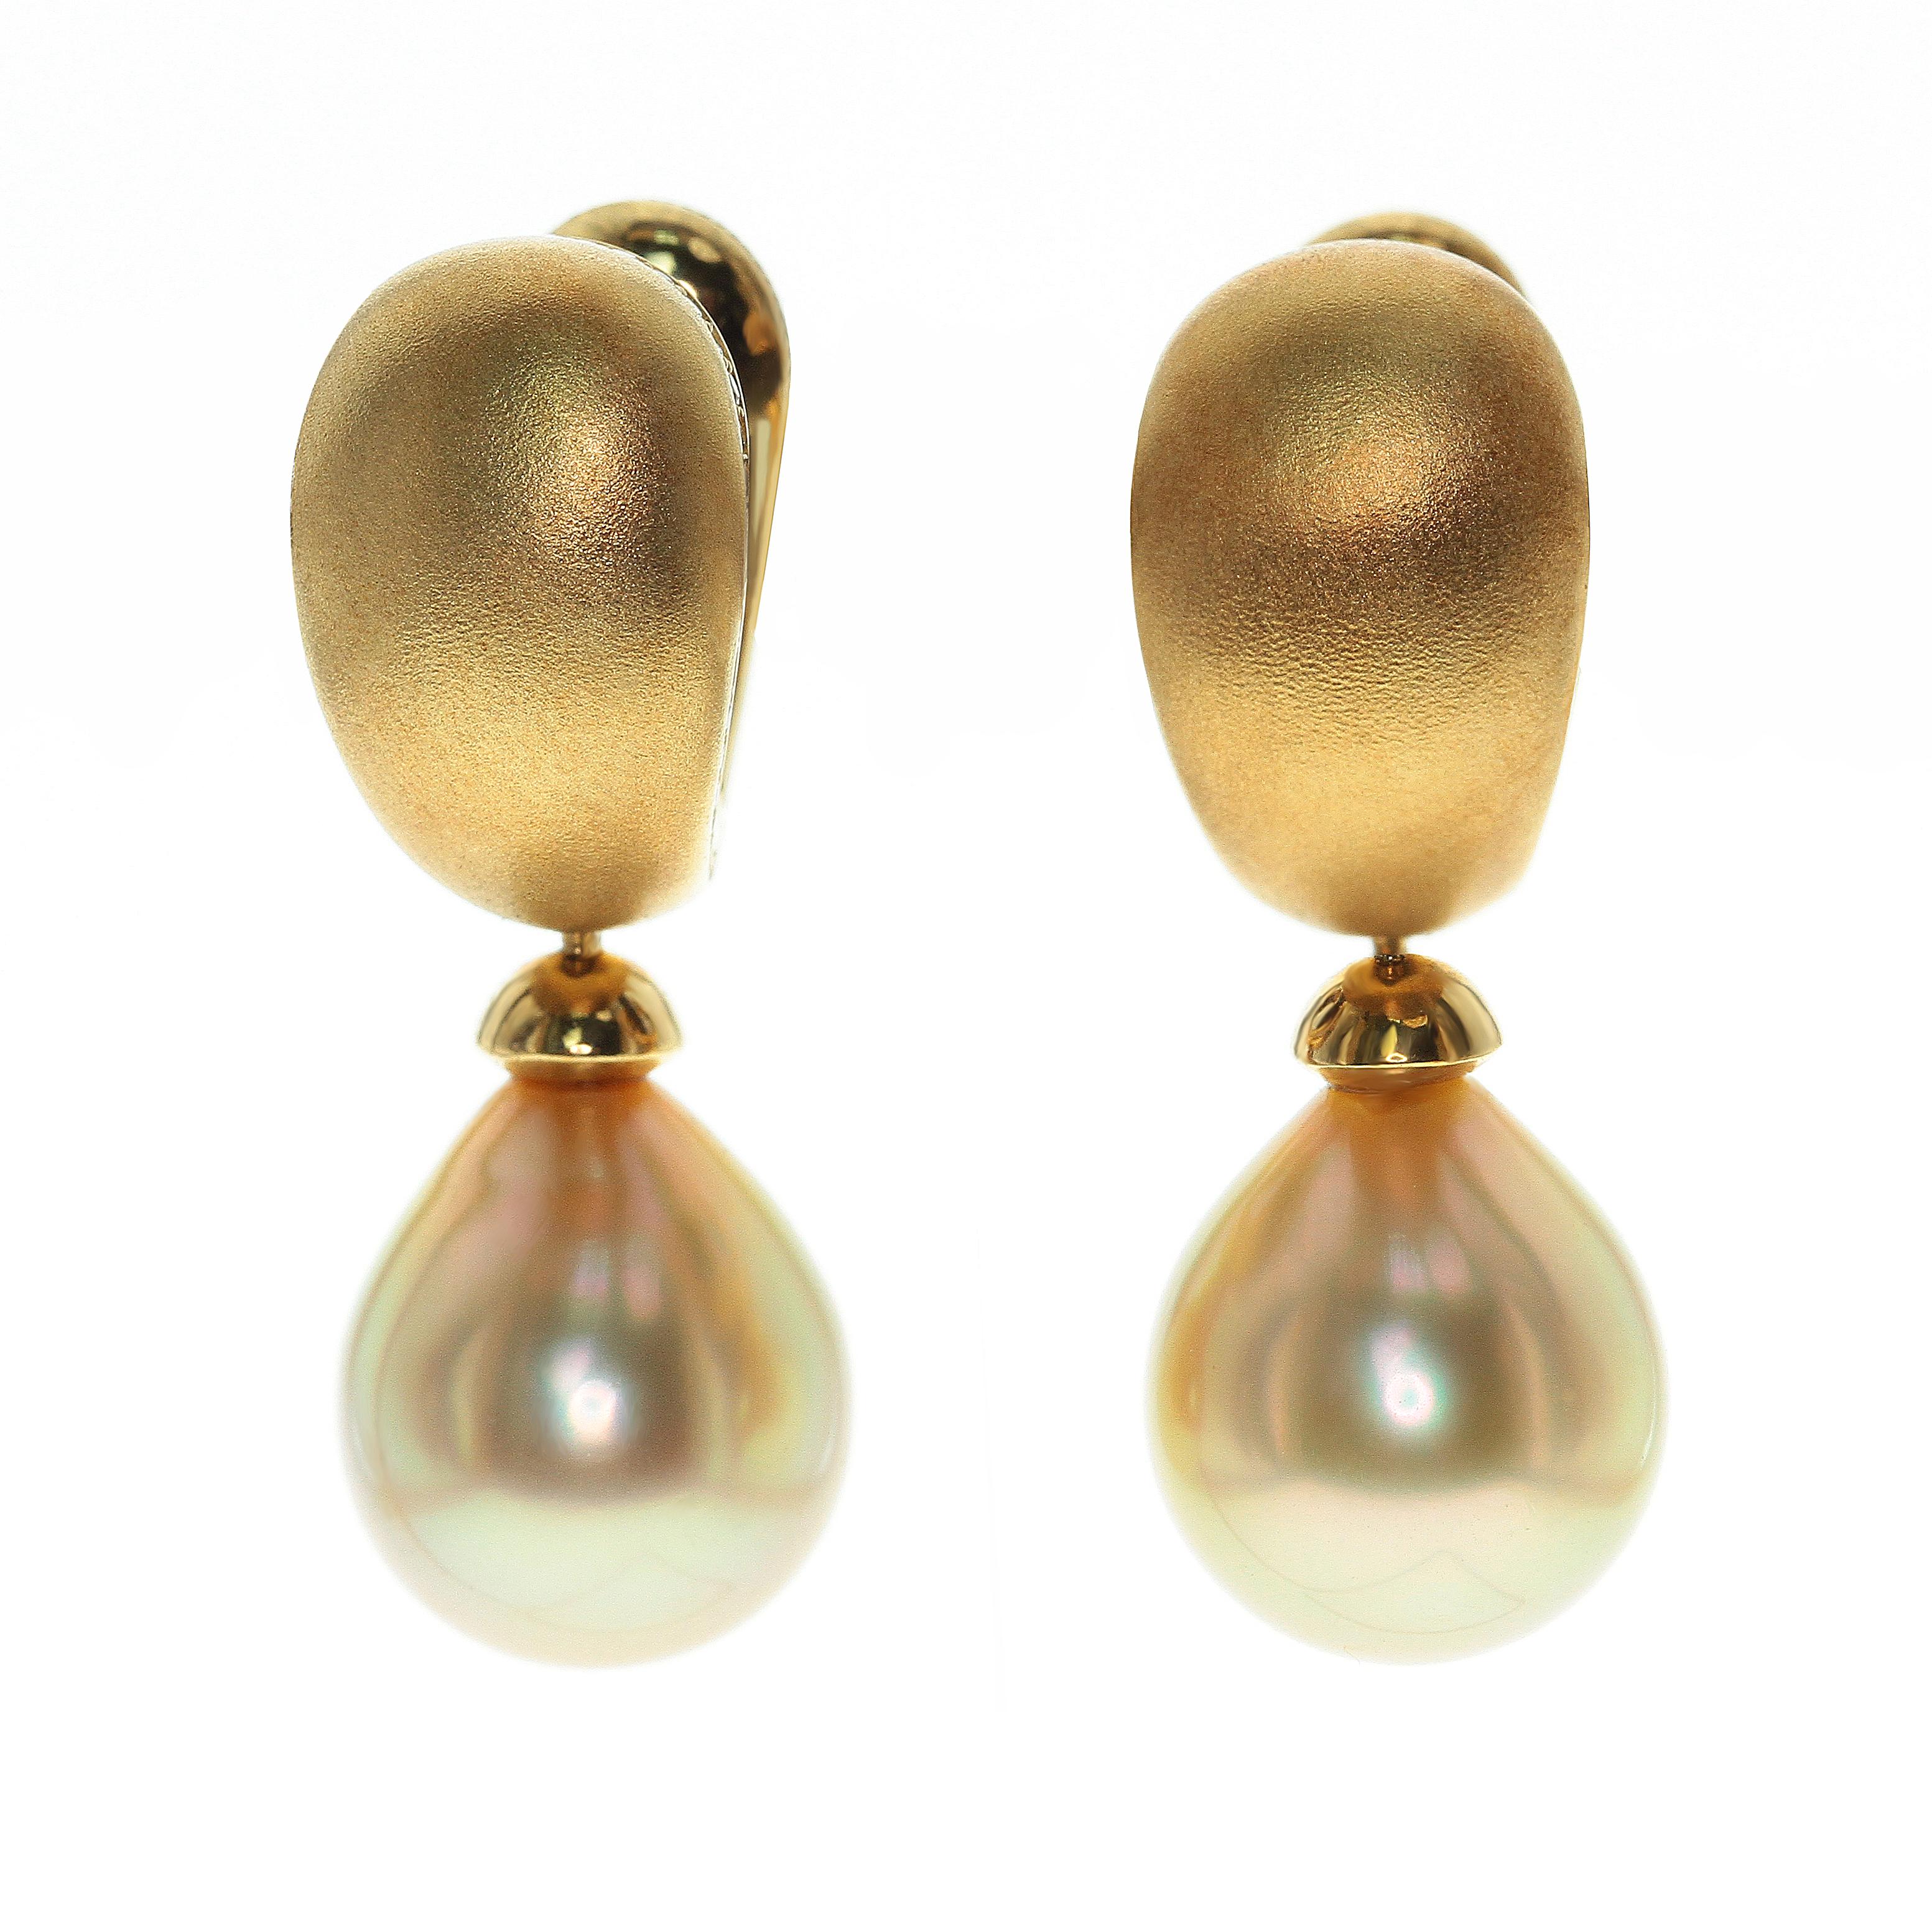 Goldene Südseeperlen-Diamanttropfen-Ohrringe

Sehr bequeme Ohrringe. Das glatte Design in Kombination mit der glatten Oberfläche einer Perle ergibt ein perfektes Ergebnis. Braune Diamanten wurden sorgfältig ausgewählt, um die Farbe der Perle zu